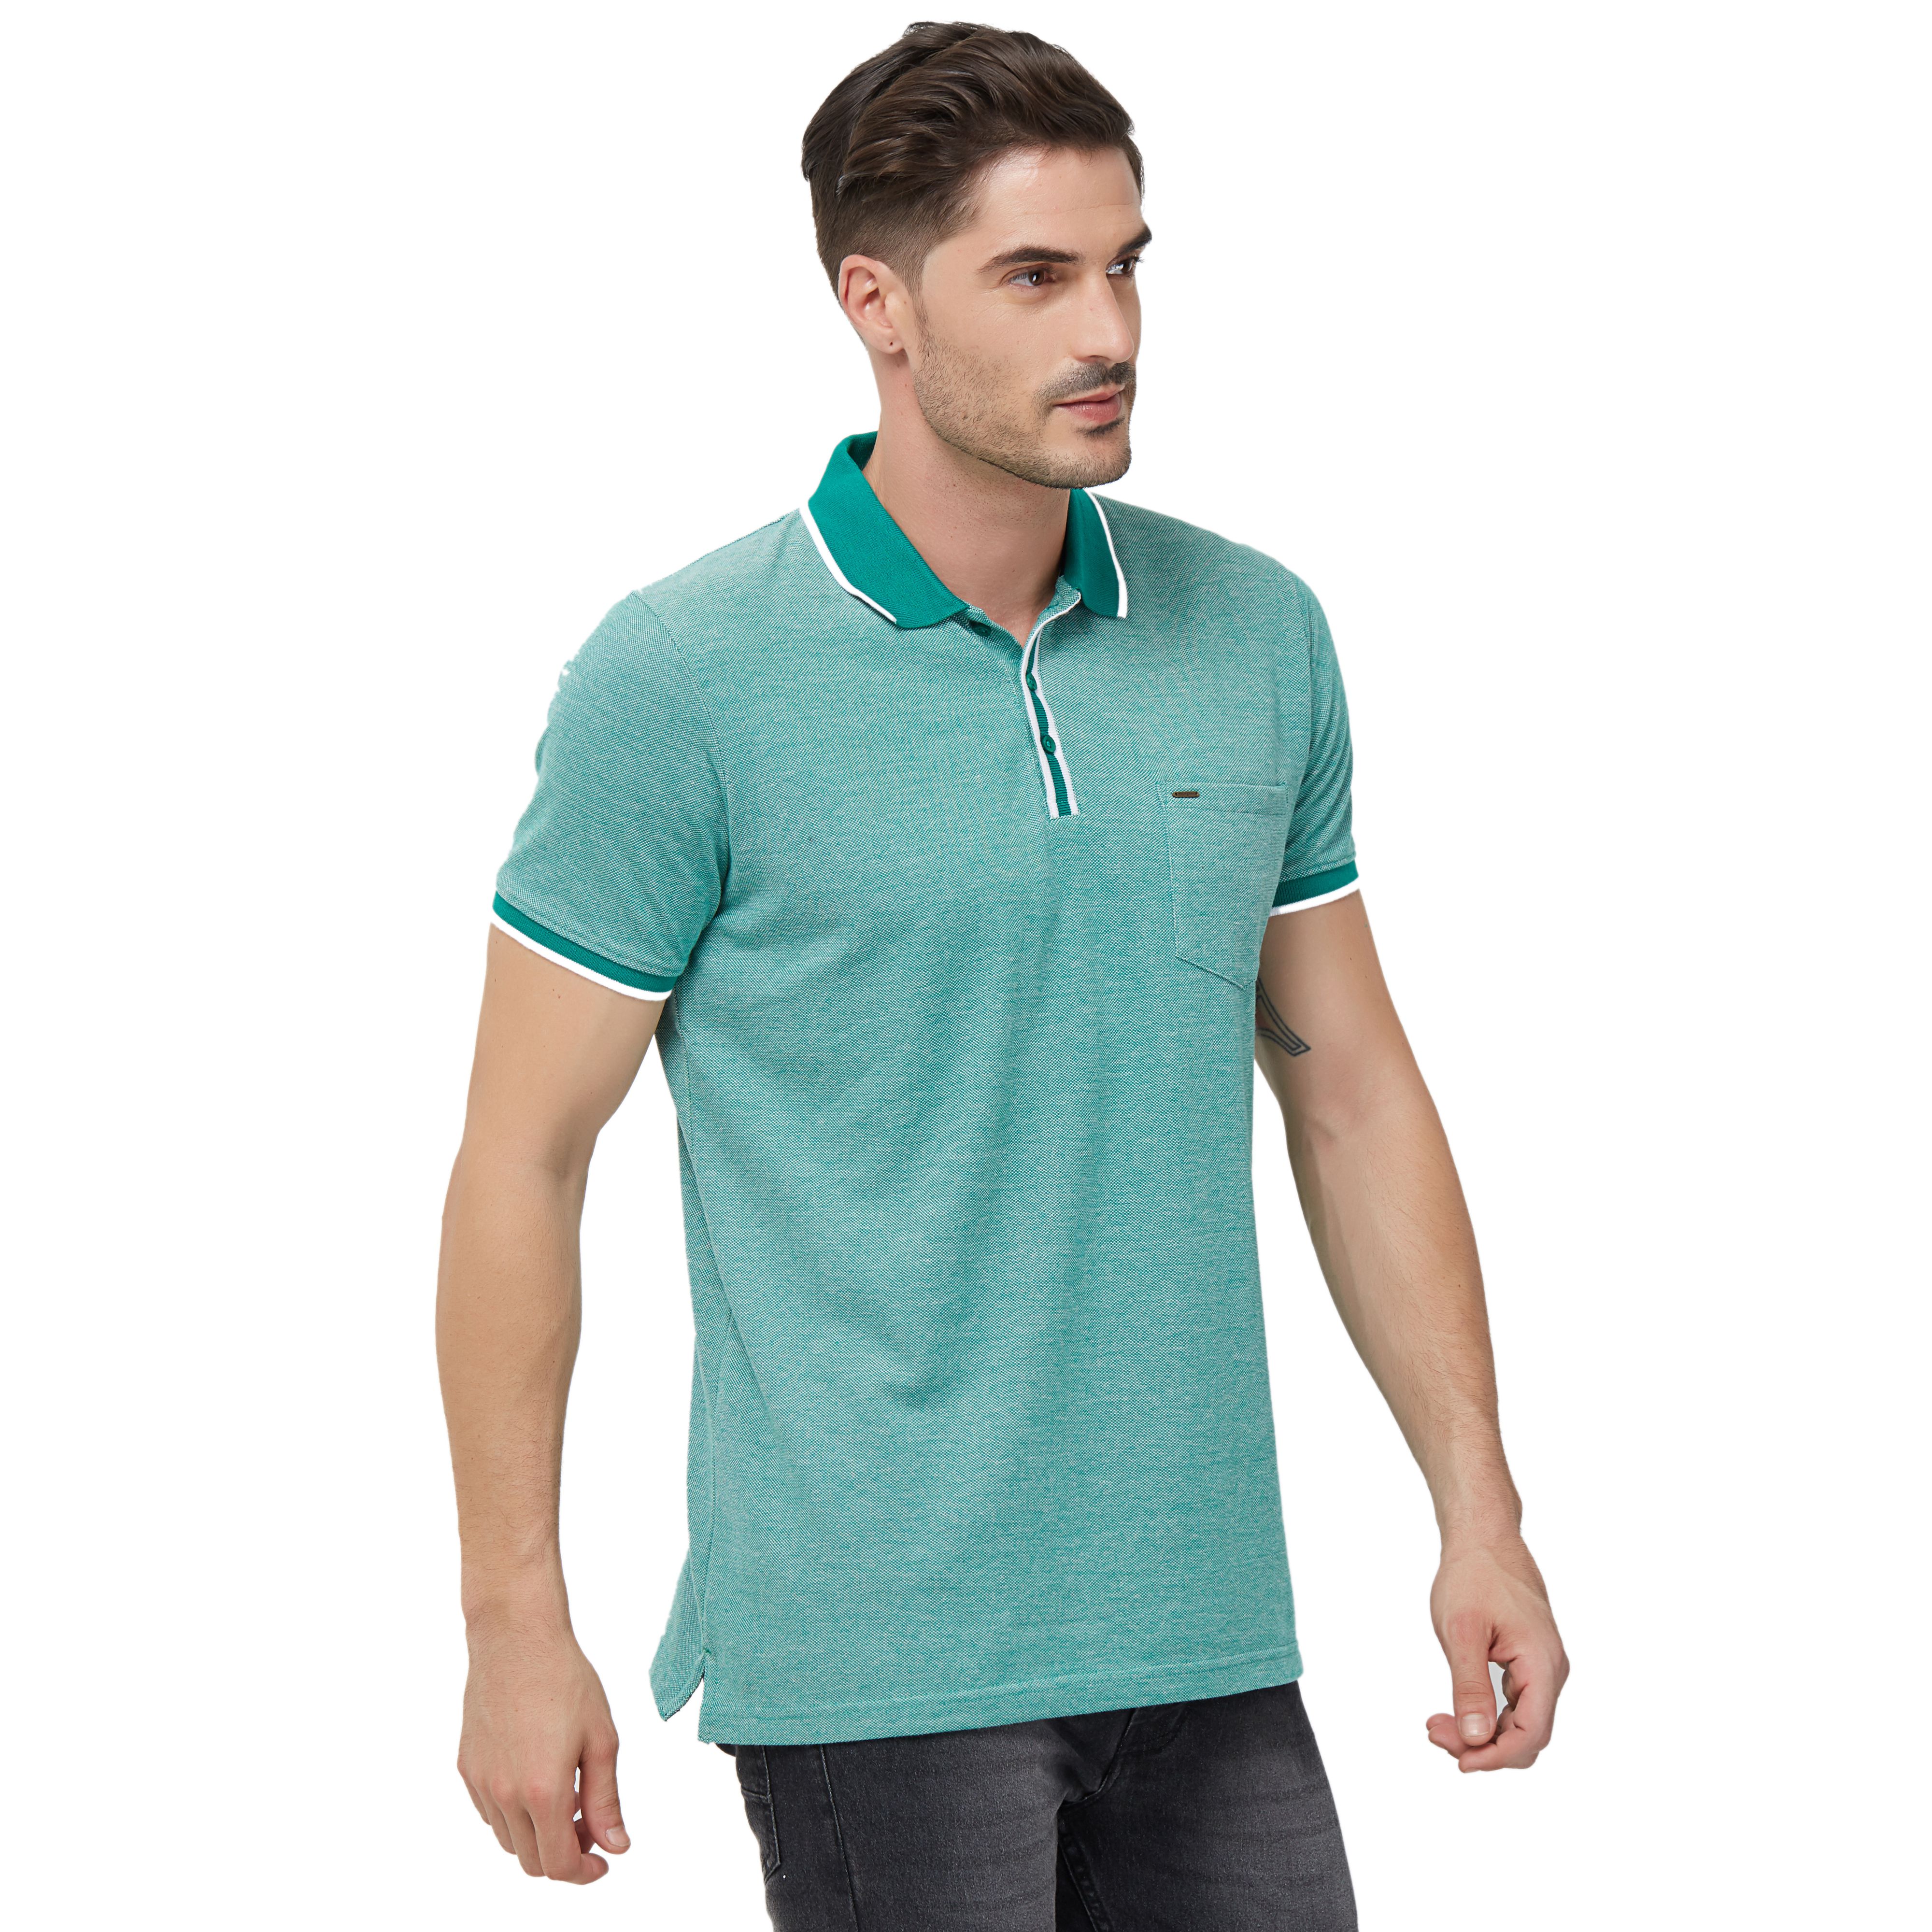 NEXGEN CLUB Cotton Blend Green Striper T-Shirt - Buy NEXGEN CLUB Cotton ...